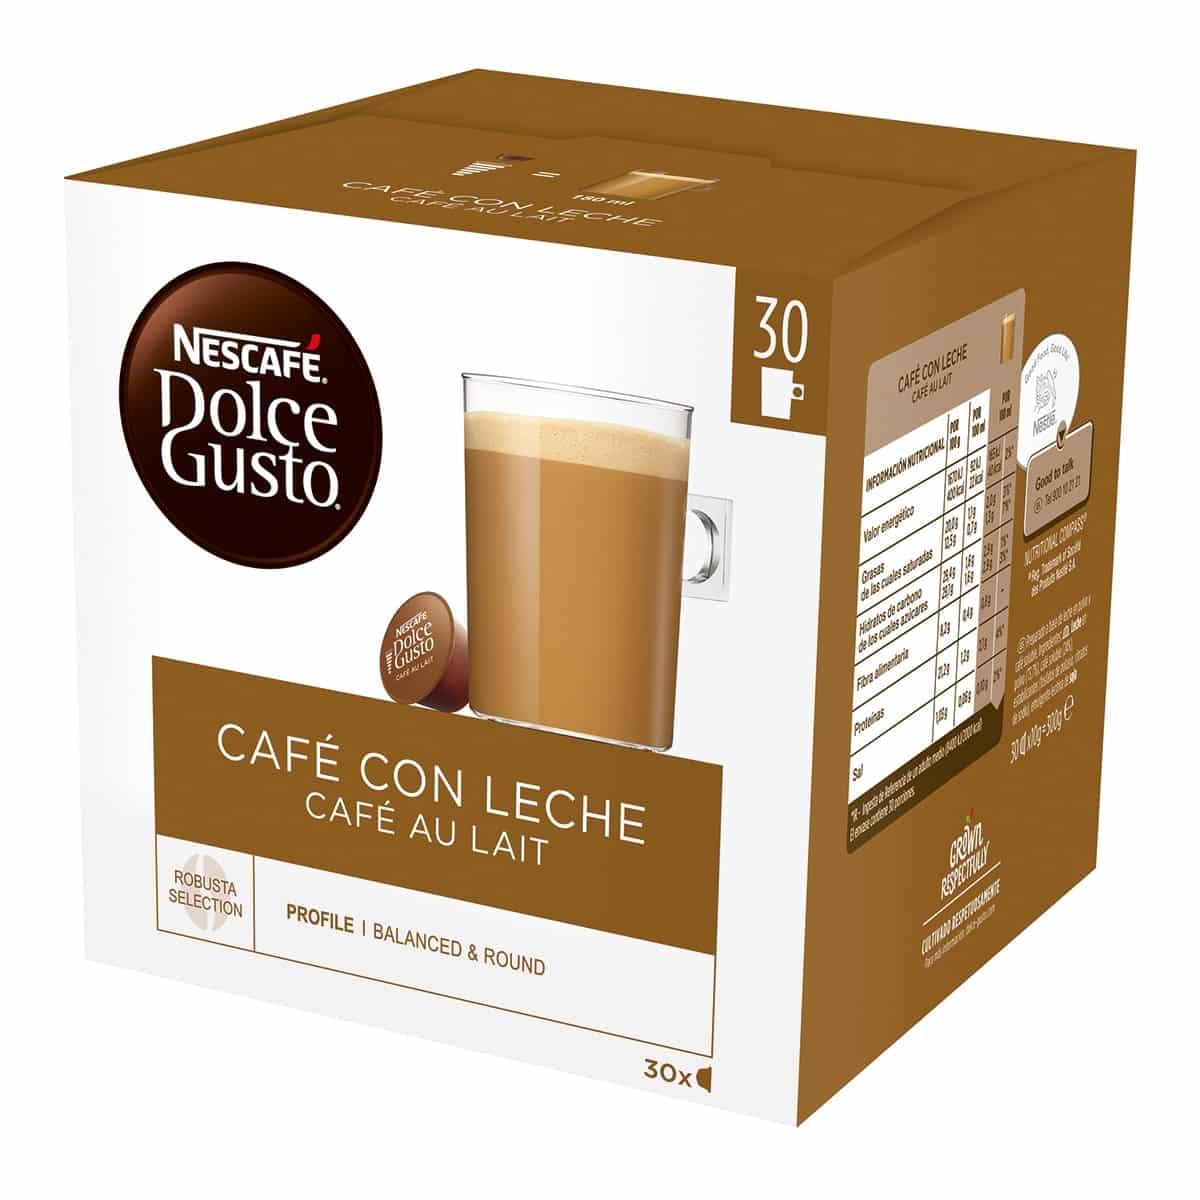 Estuche 30 cápsulas NESCAFE DOLCE GUSTO café con leche selección robusta